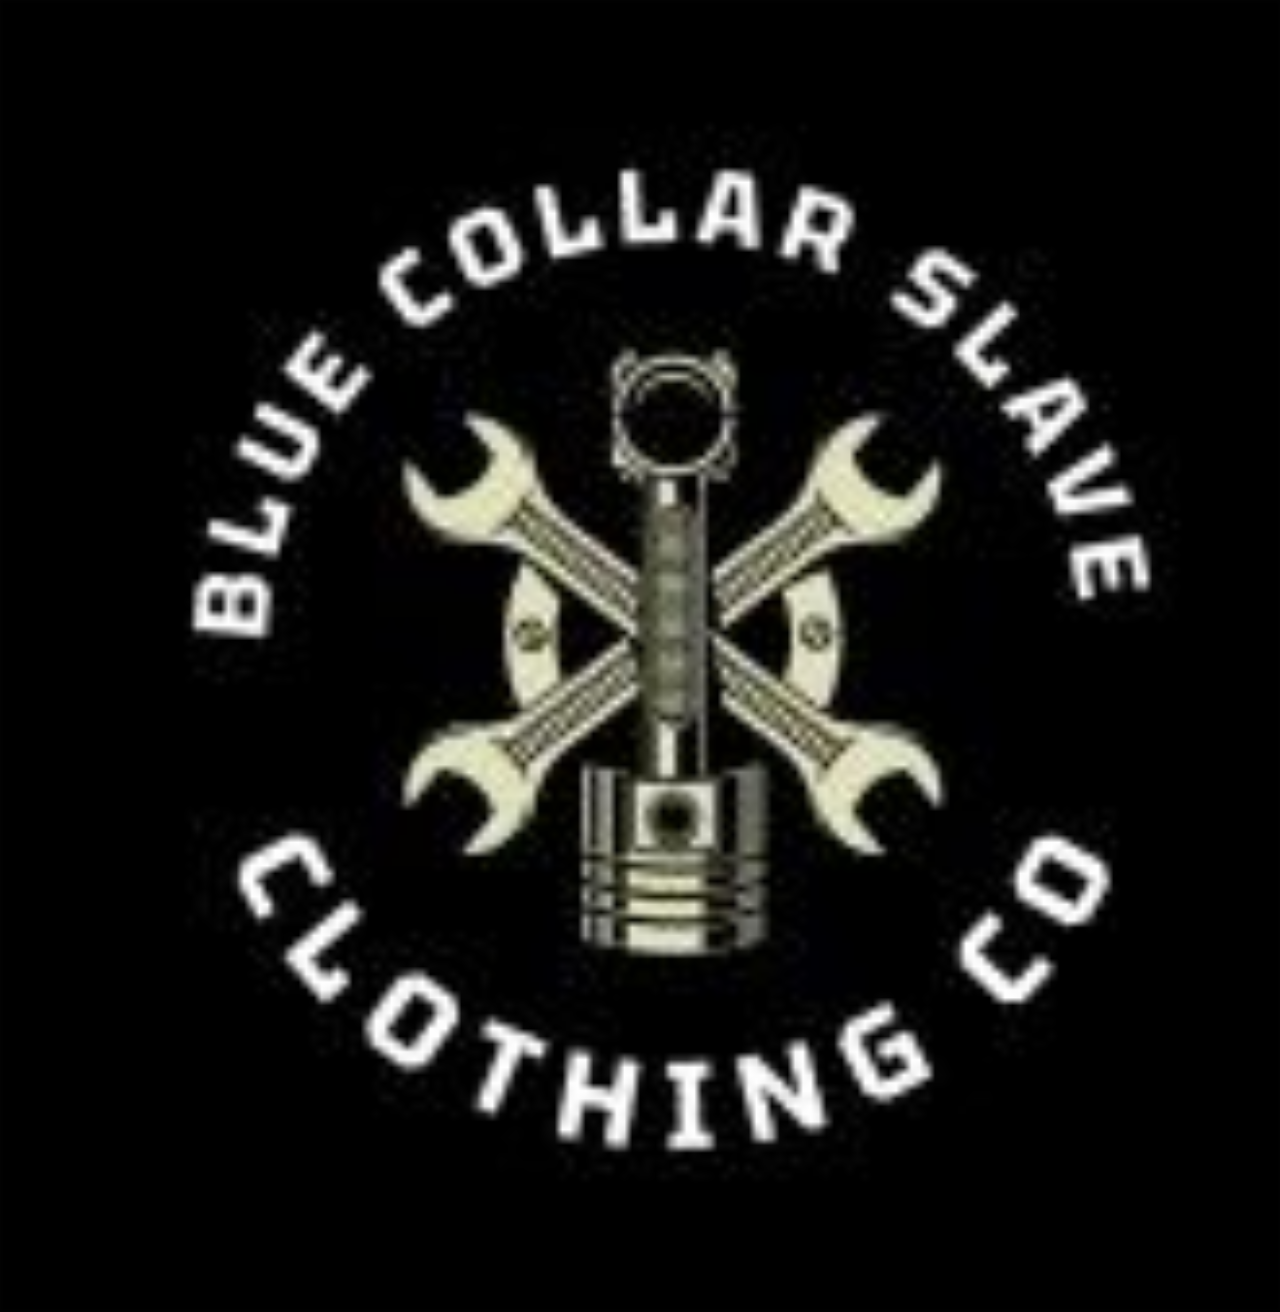 Blue Collar Slave Clothing Co's logo